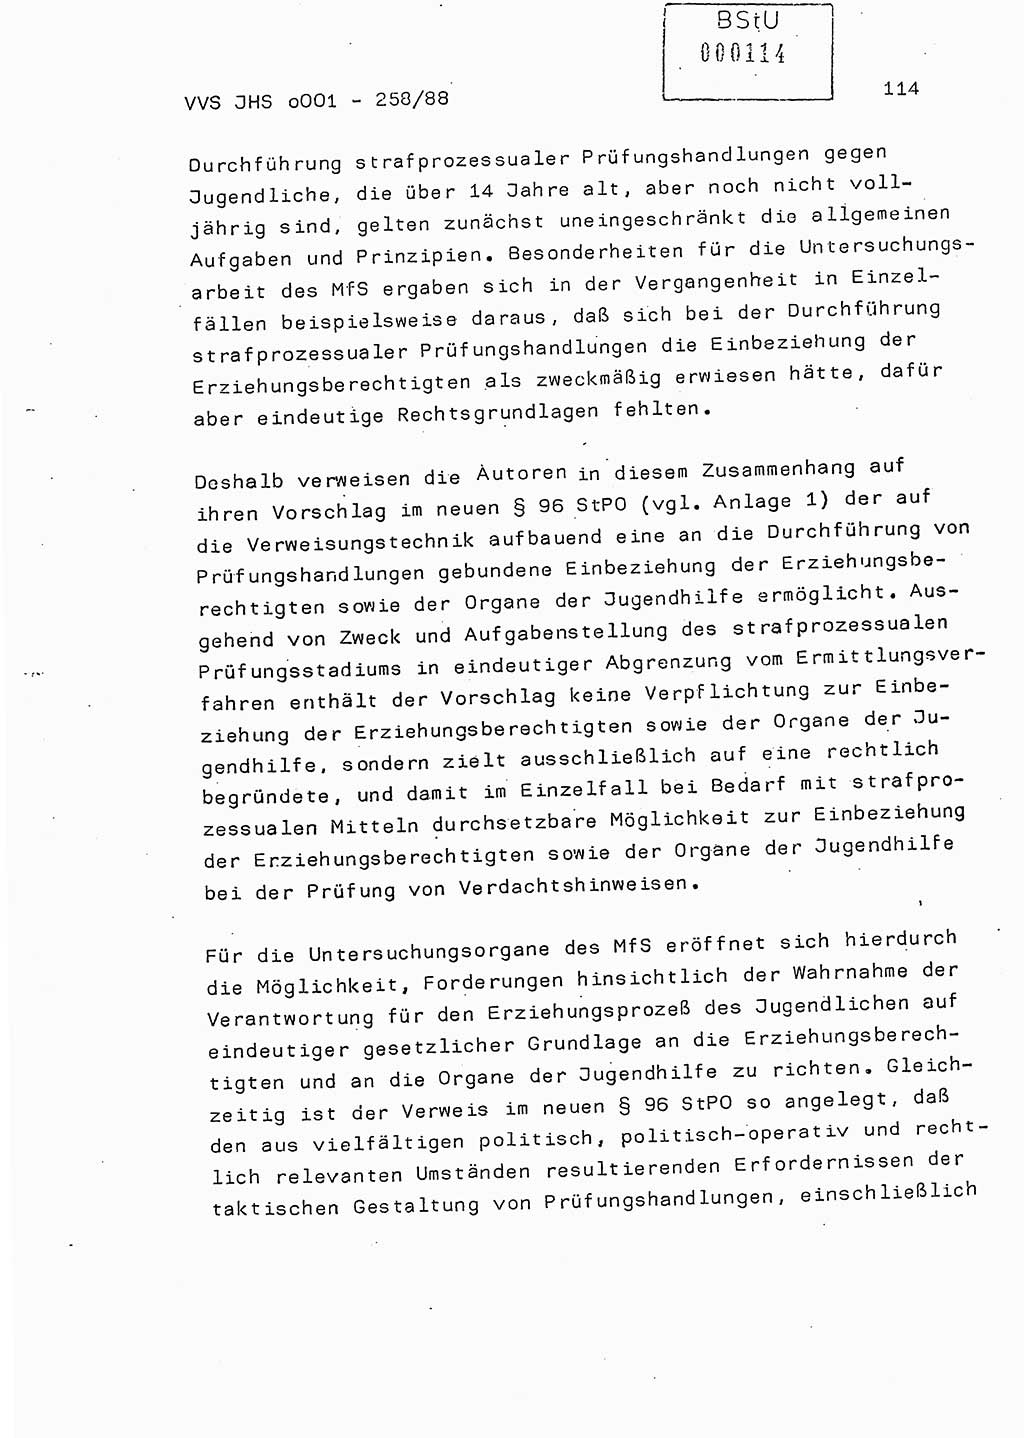 Dissertation, Oberleutnant Uwe Kärsten (JHS), Hauptmann Dr. Joachim Henkel (JHS), Oberstleutnant Werner Mählitz (Leiter der Abt. Ⅸ BV Rostock), Oberstleutnant Jürgen Tröge (HA Ⅸ/AKG), Oberstleutnant Winfried Ziegler (HA Ⅸ/9), Major Wolf-Rüdiger Wurzler (JHS), Ministerium für Staatssicherheit (MfS) [Deutsche Demokratische Republik (DDR)], Juristische Hochschule (JHS), Vertrauliche Verschlußsache (VVS) o001-258/88, Potsdam 1988, Seite 114 (Diss. MfS DDR JHS VVS o001-258/88 1988, S. 114)